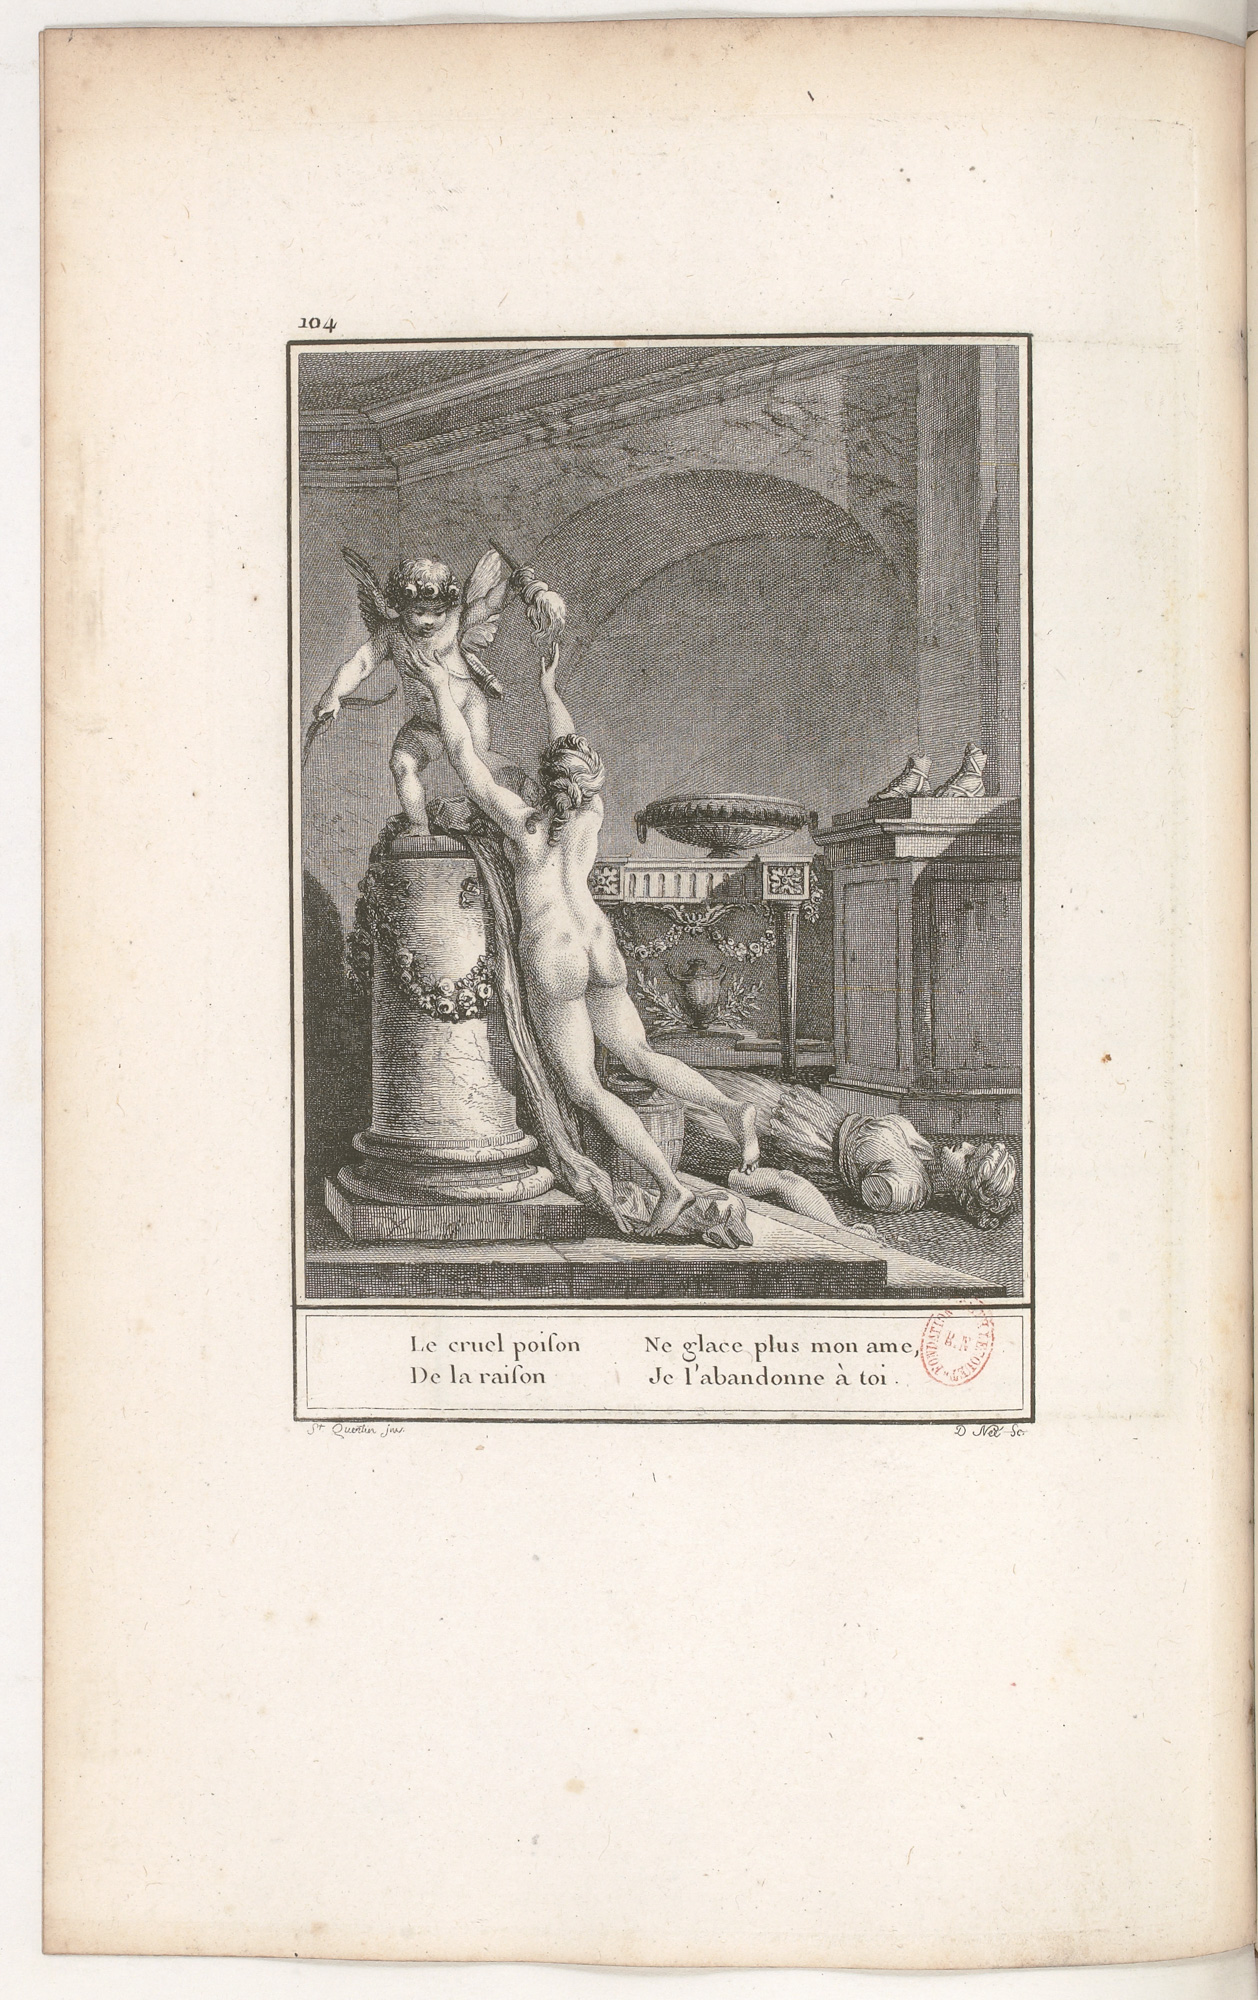 S.4.18 L’amour vain queur de la raison,1772, Image